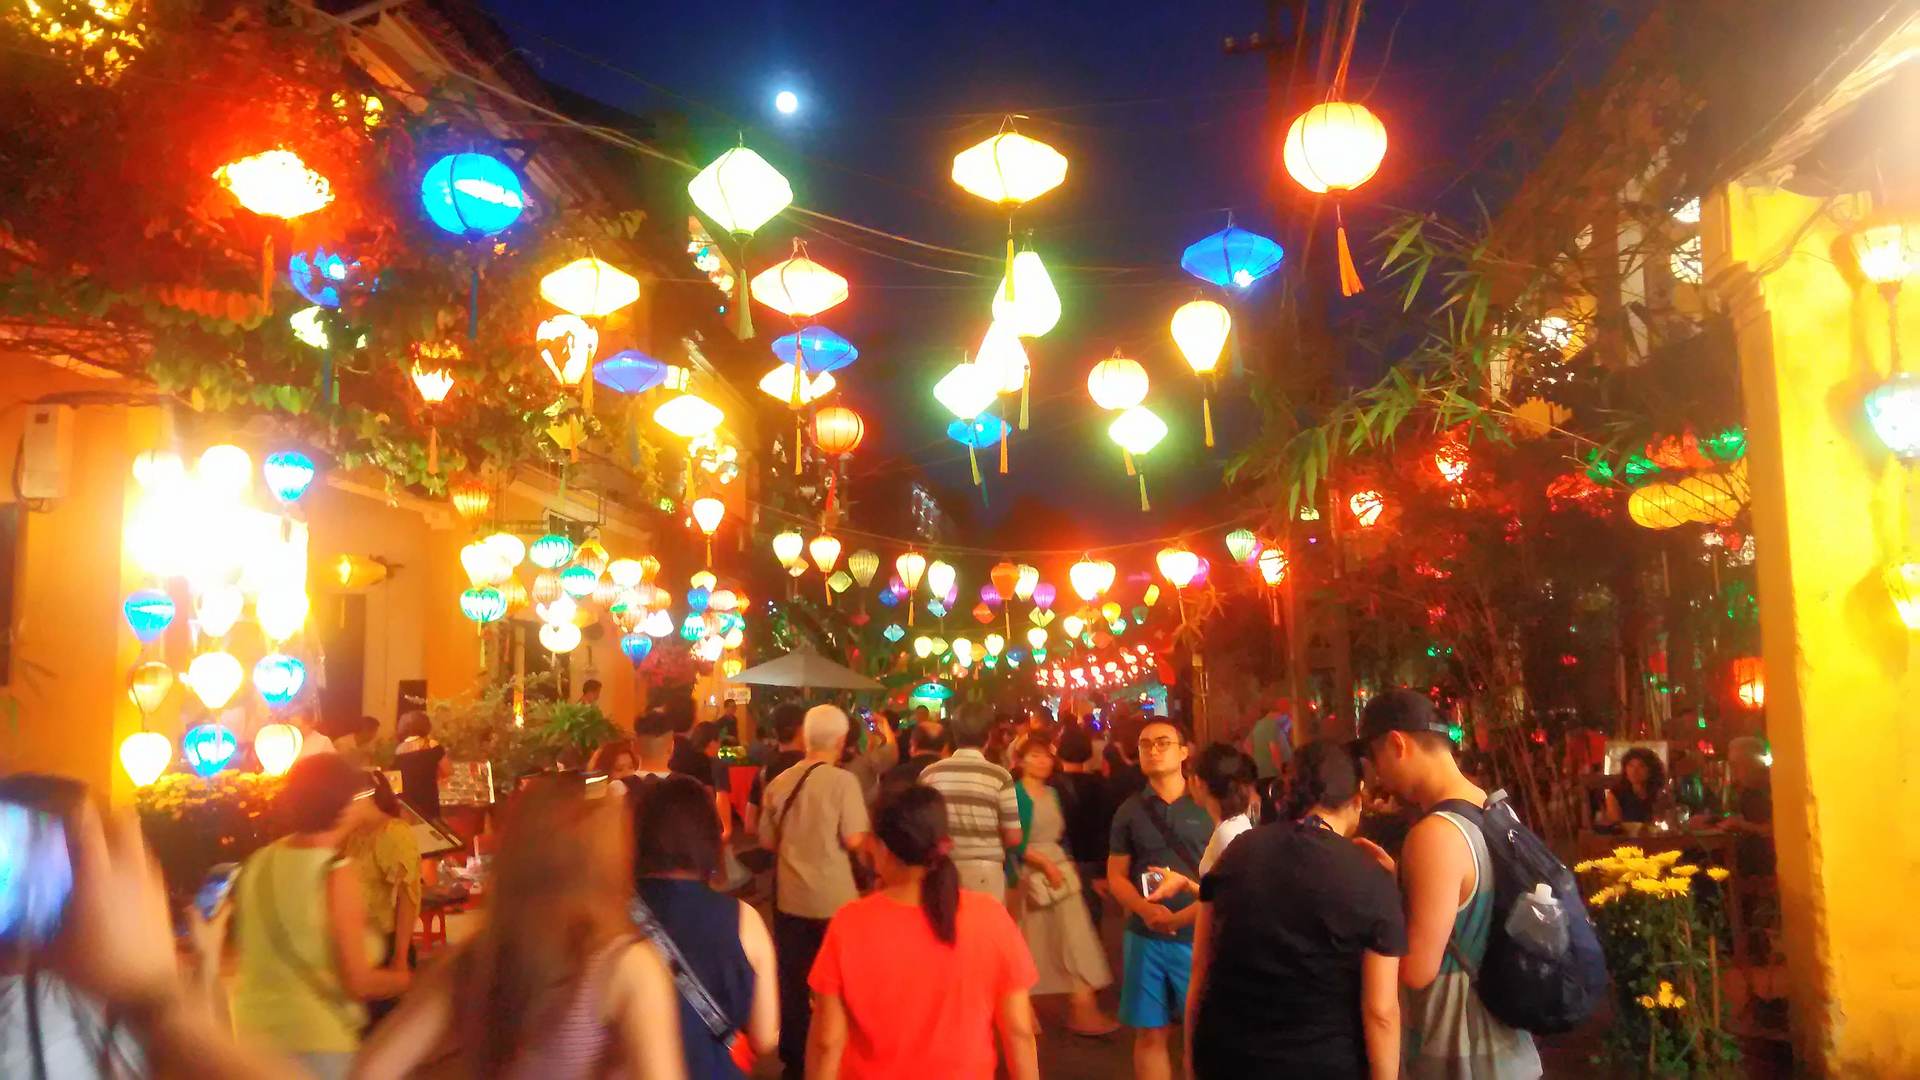 ホイアン ベトナム中部 ランタン祭り ハノイ在住ミランさんのおすすめ夜景スポット ロコタビ